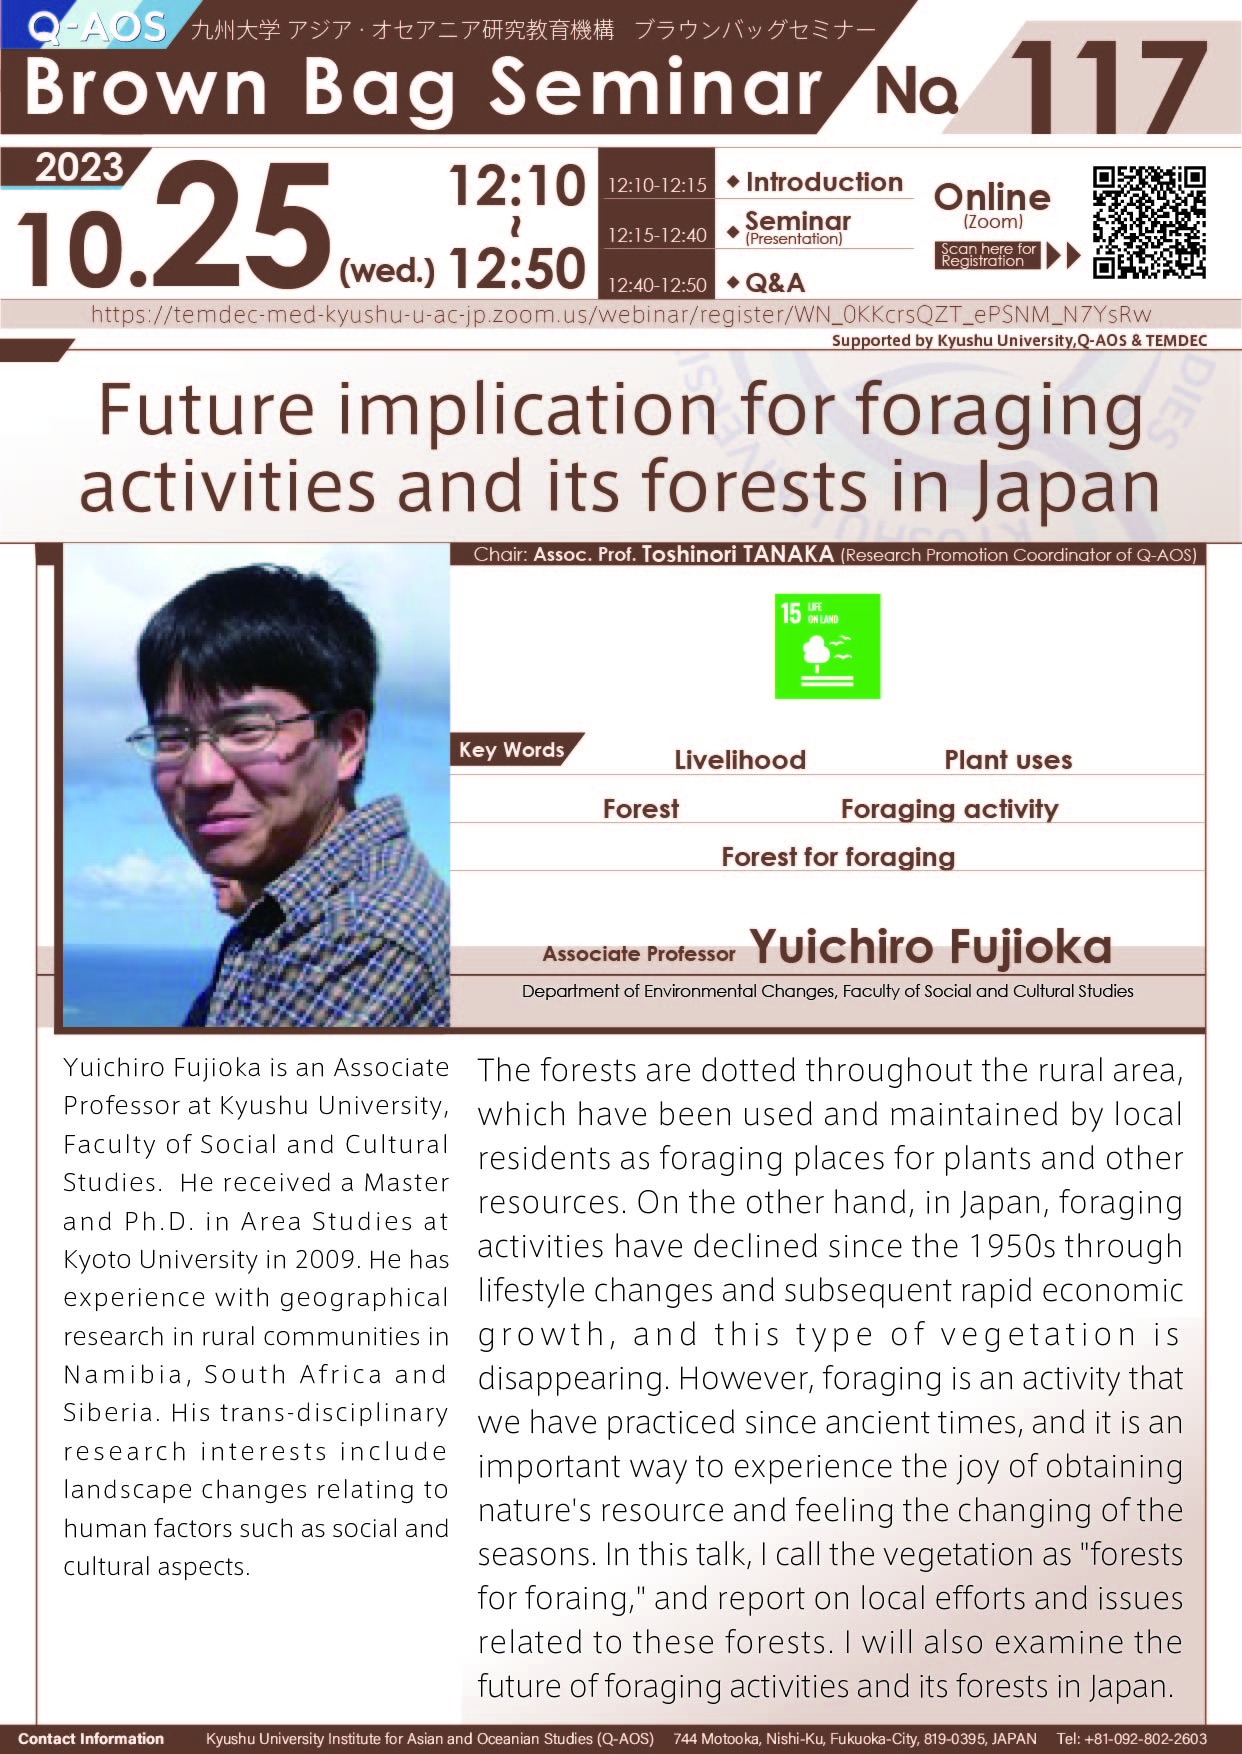 アイキャッチ画像：Q-AOS Brown Bag Seminar Series The 117th Seminar “Future implication for foraging activities and its forests in Japan”